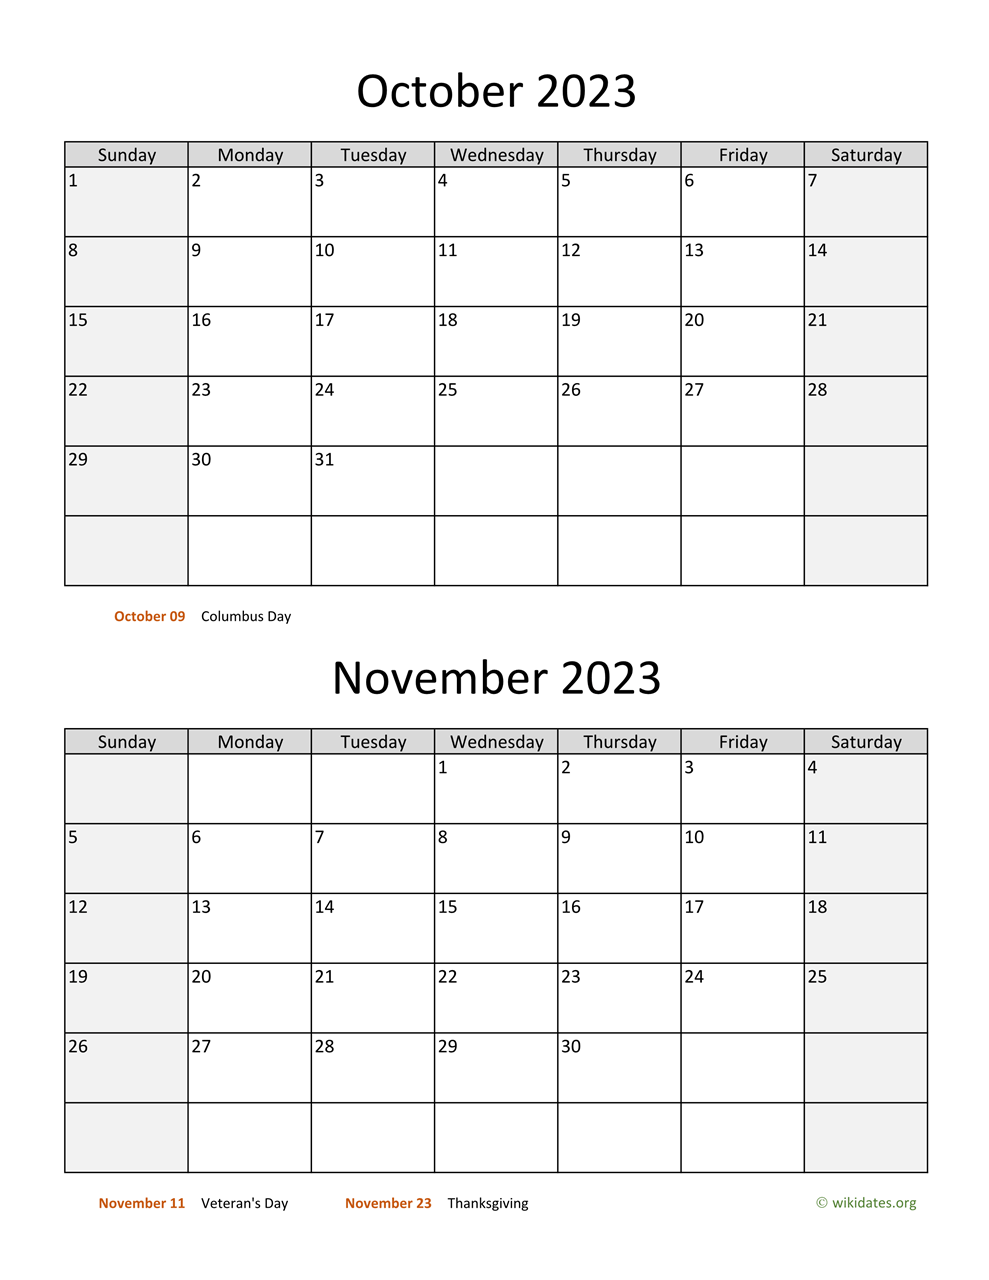 october-and-november-2023-calendar-wikidates